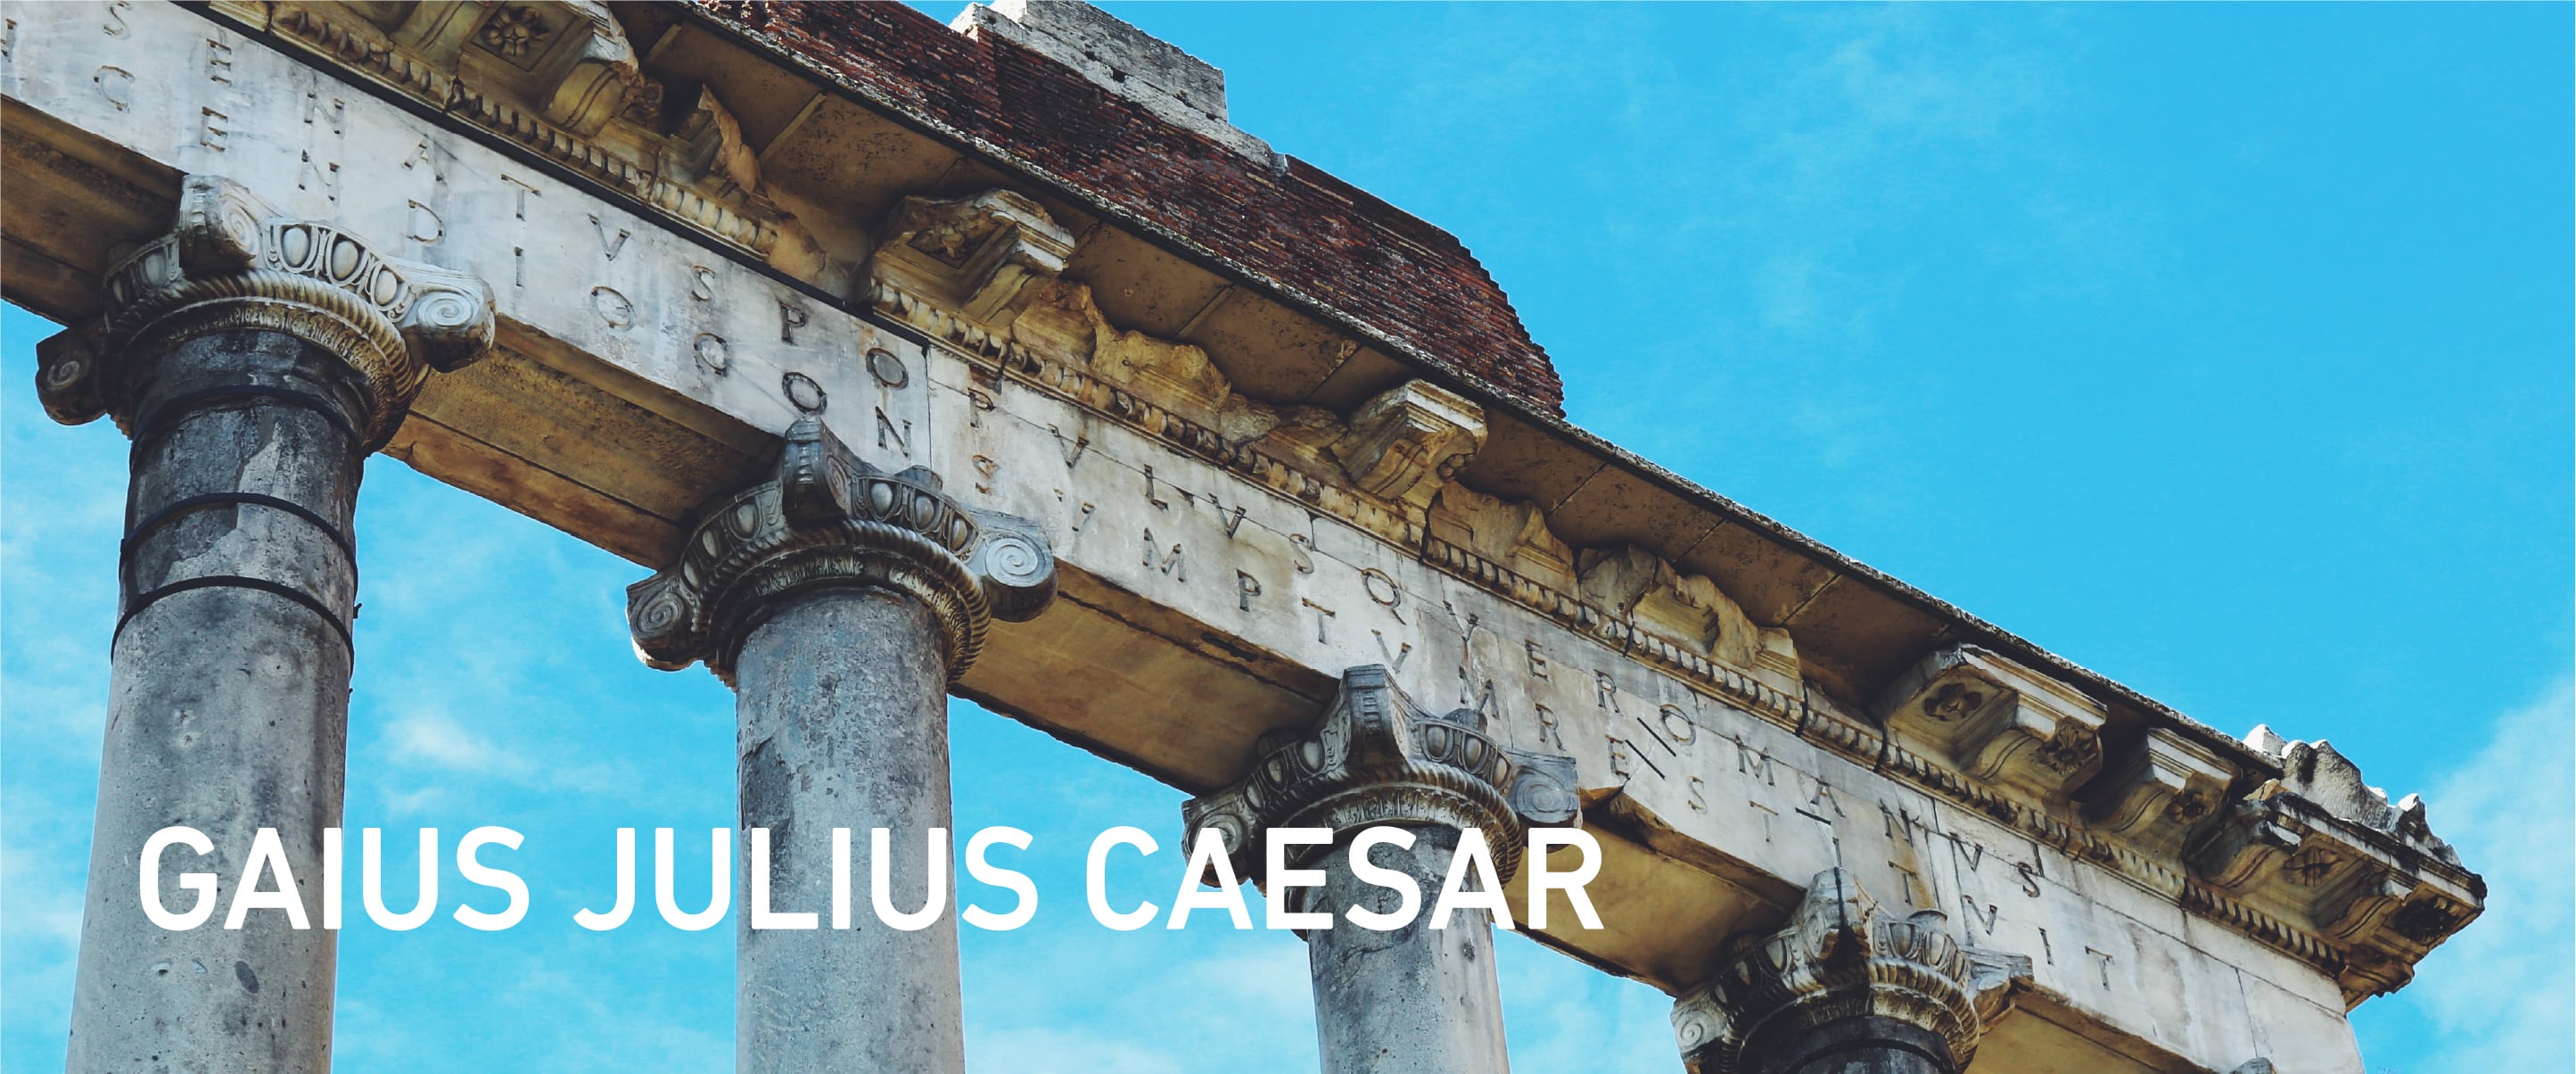 GAIUS JULIUS CAESAR